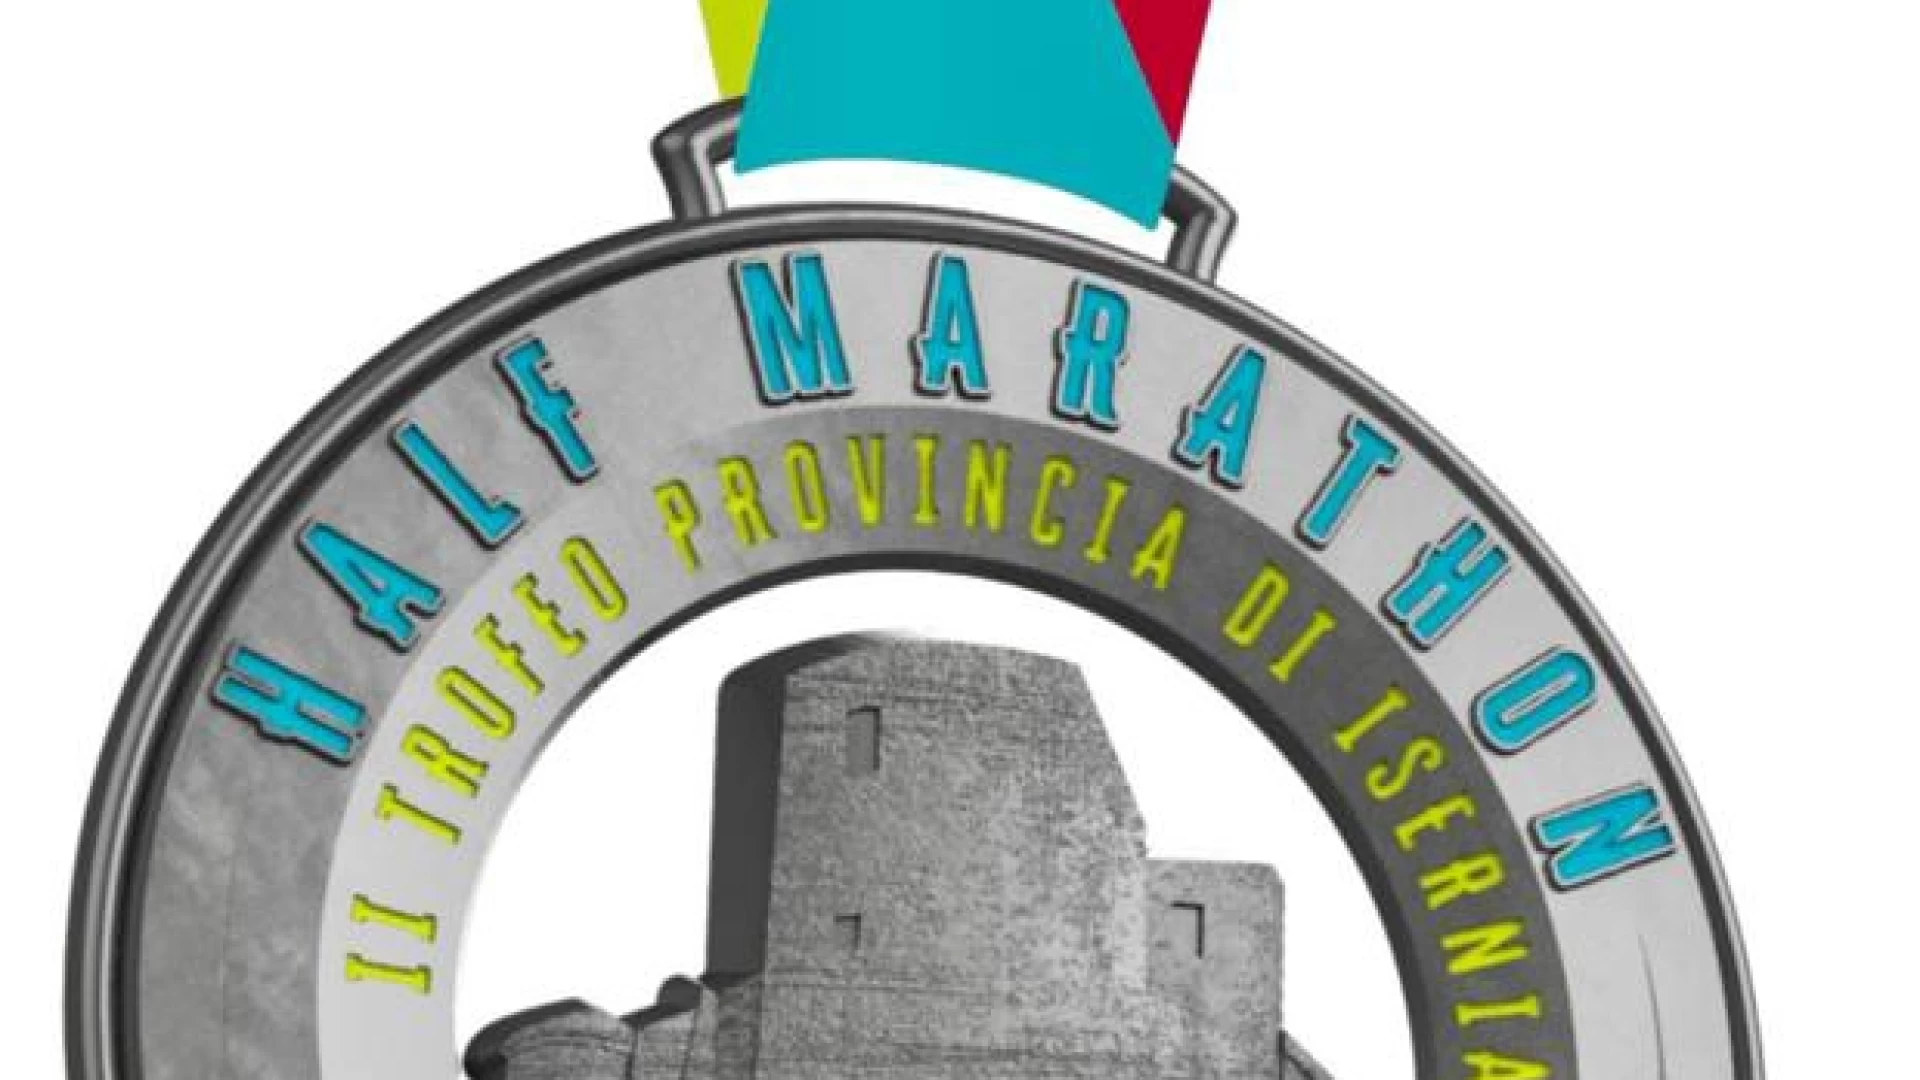 Atletica leggera: Half Marathon, nuove collaborazioni. Il Castello Pandone protagoniste sulle medaglie.